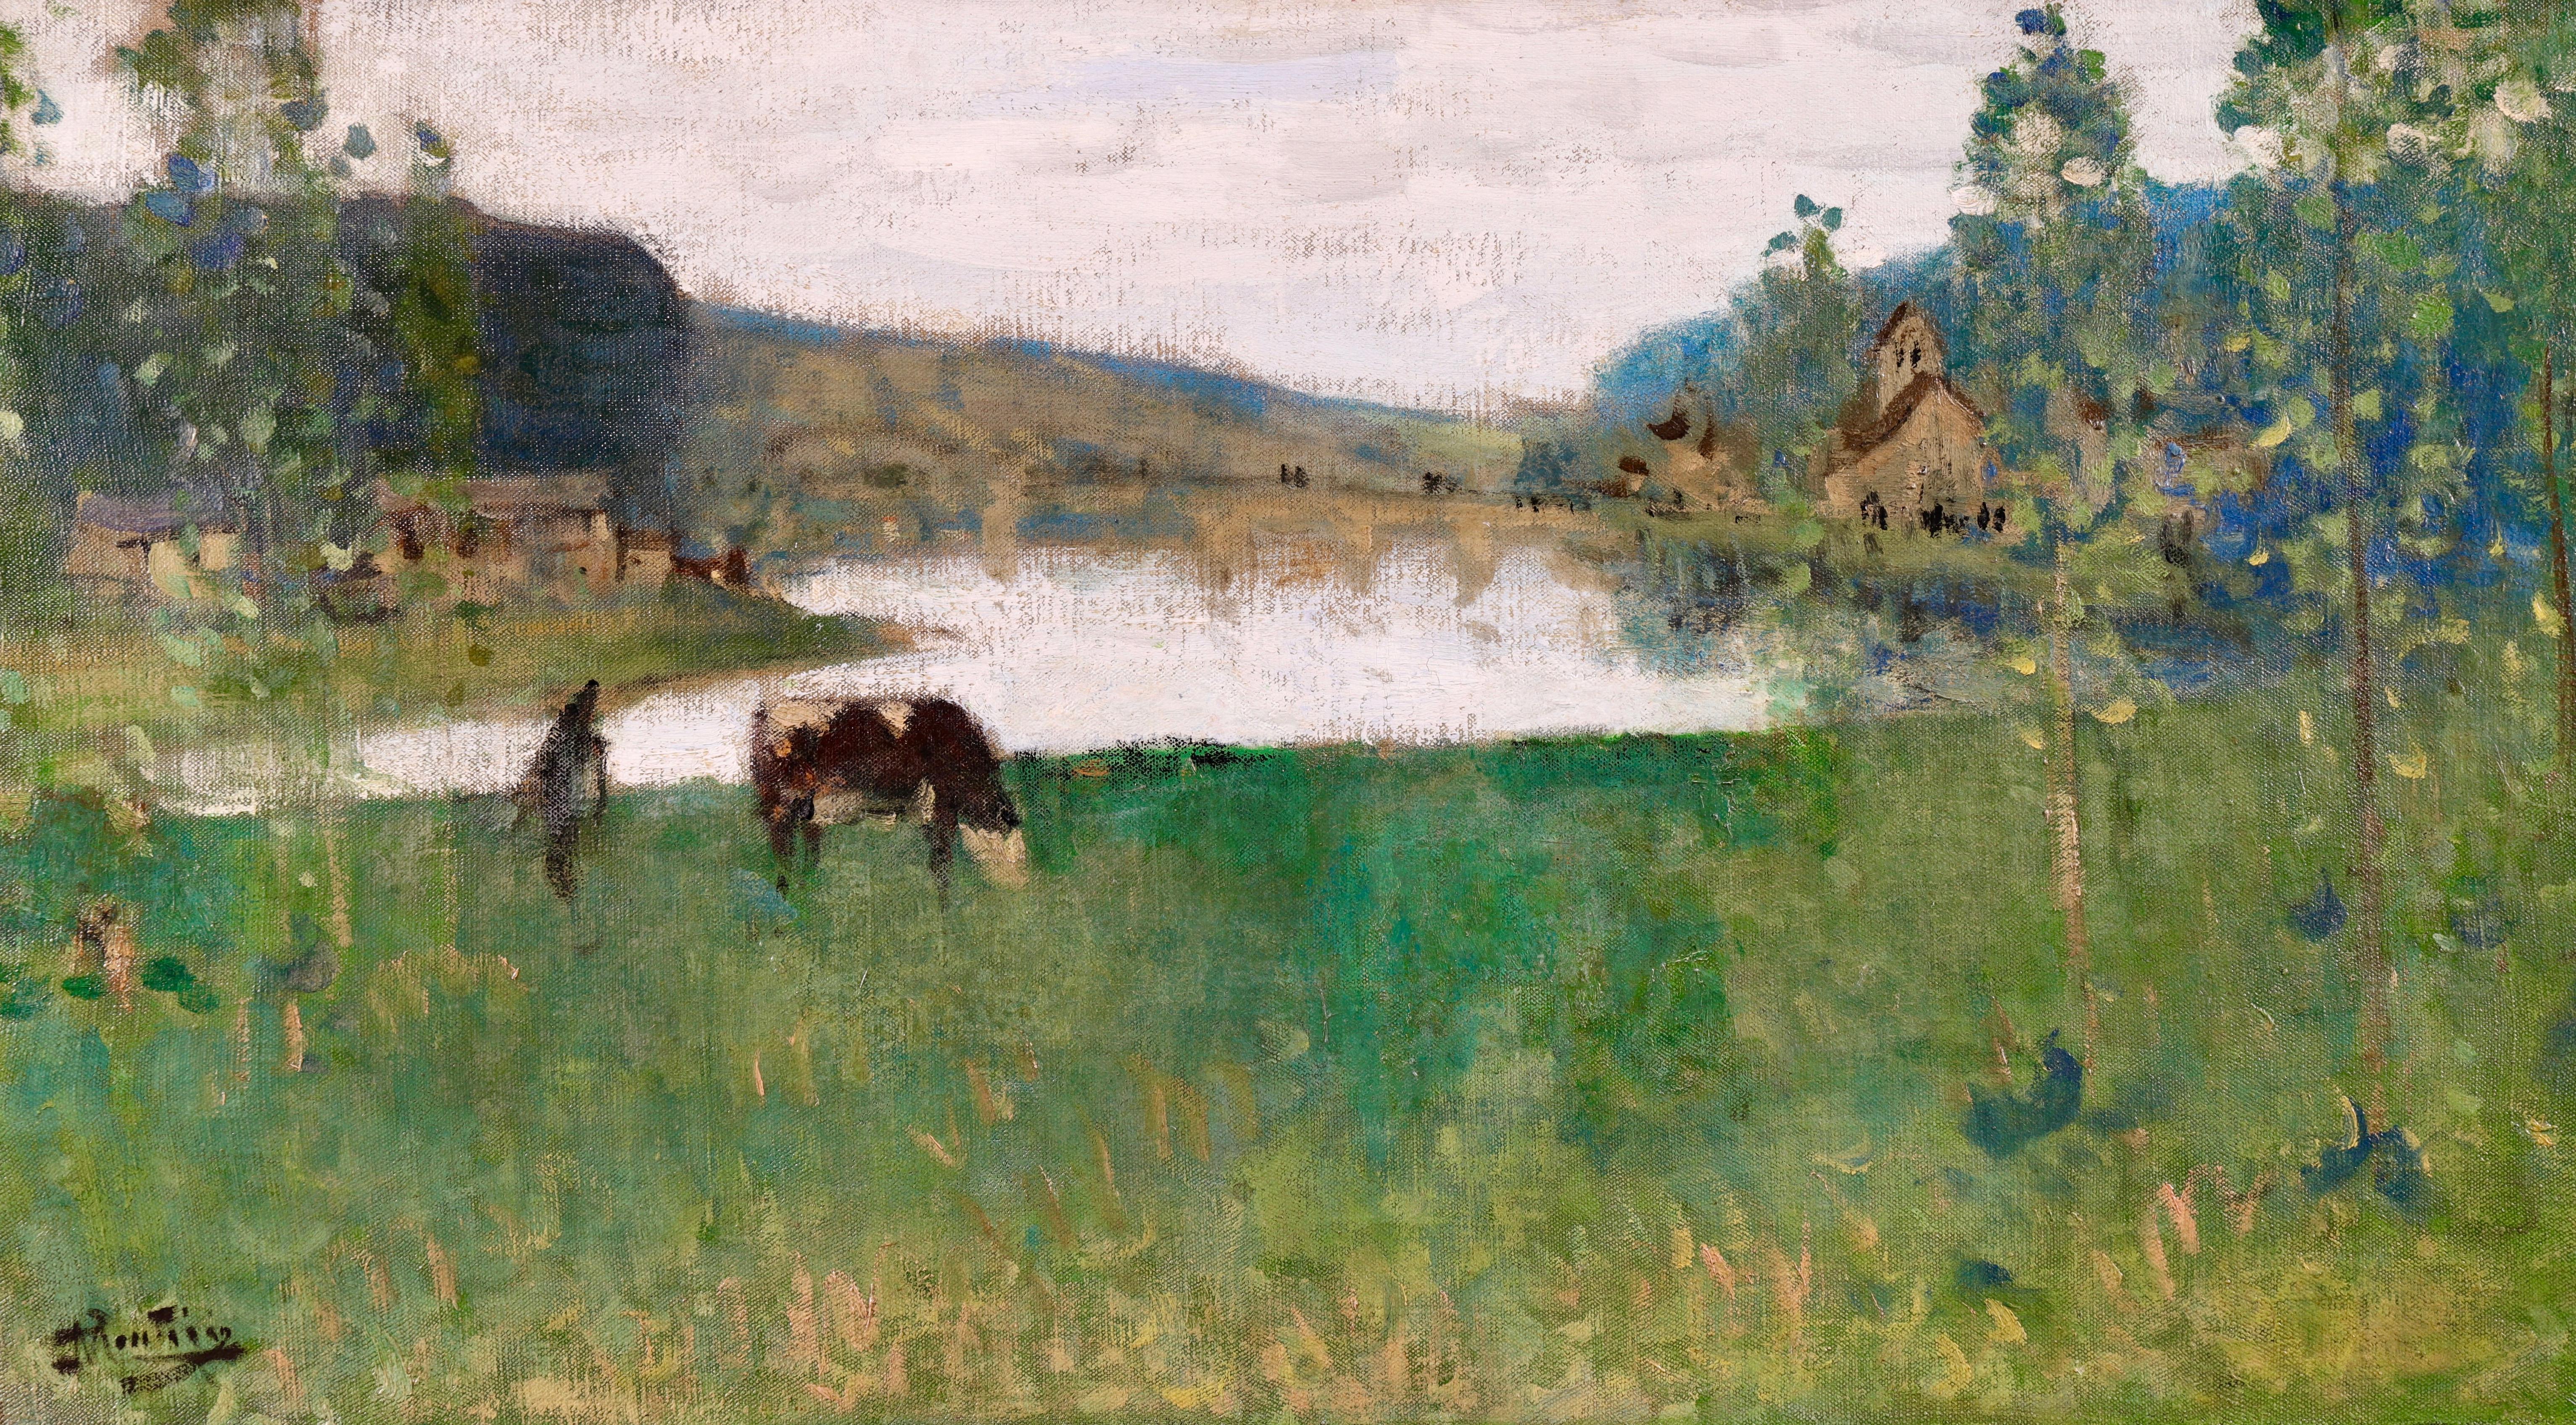 By the Lake - Öl, Figur und Kuh in Landschaft von Pierre Montezin, 19. Jahrhundert (Impressionismus), Painting, von Pierre Eugene Montezin